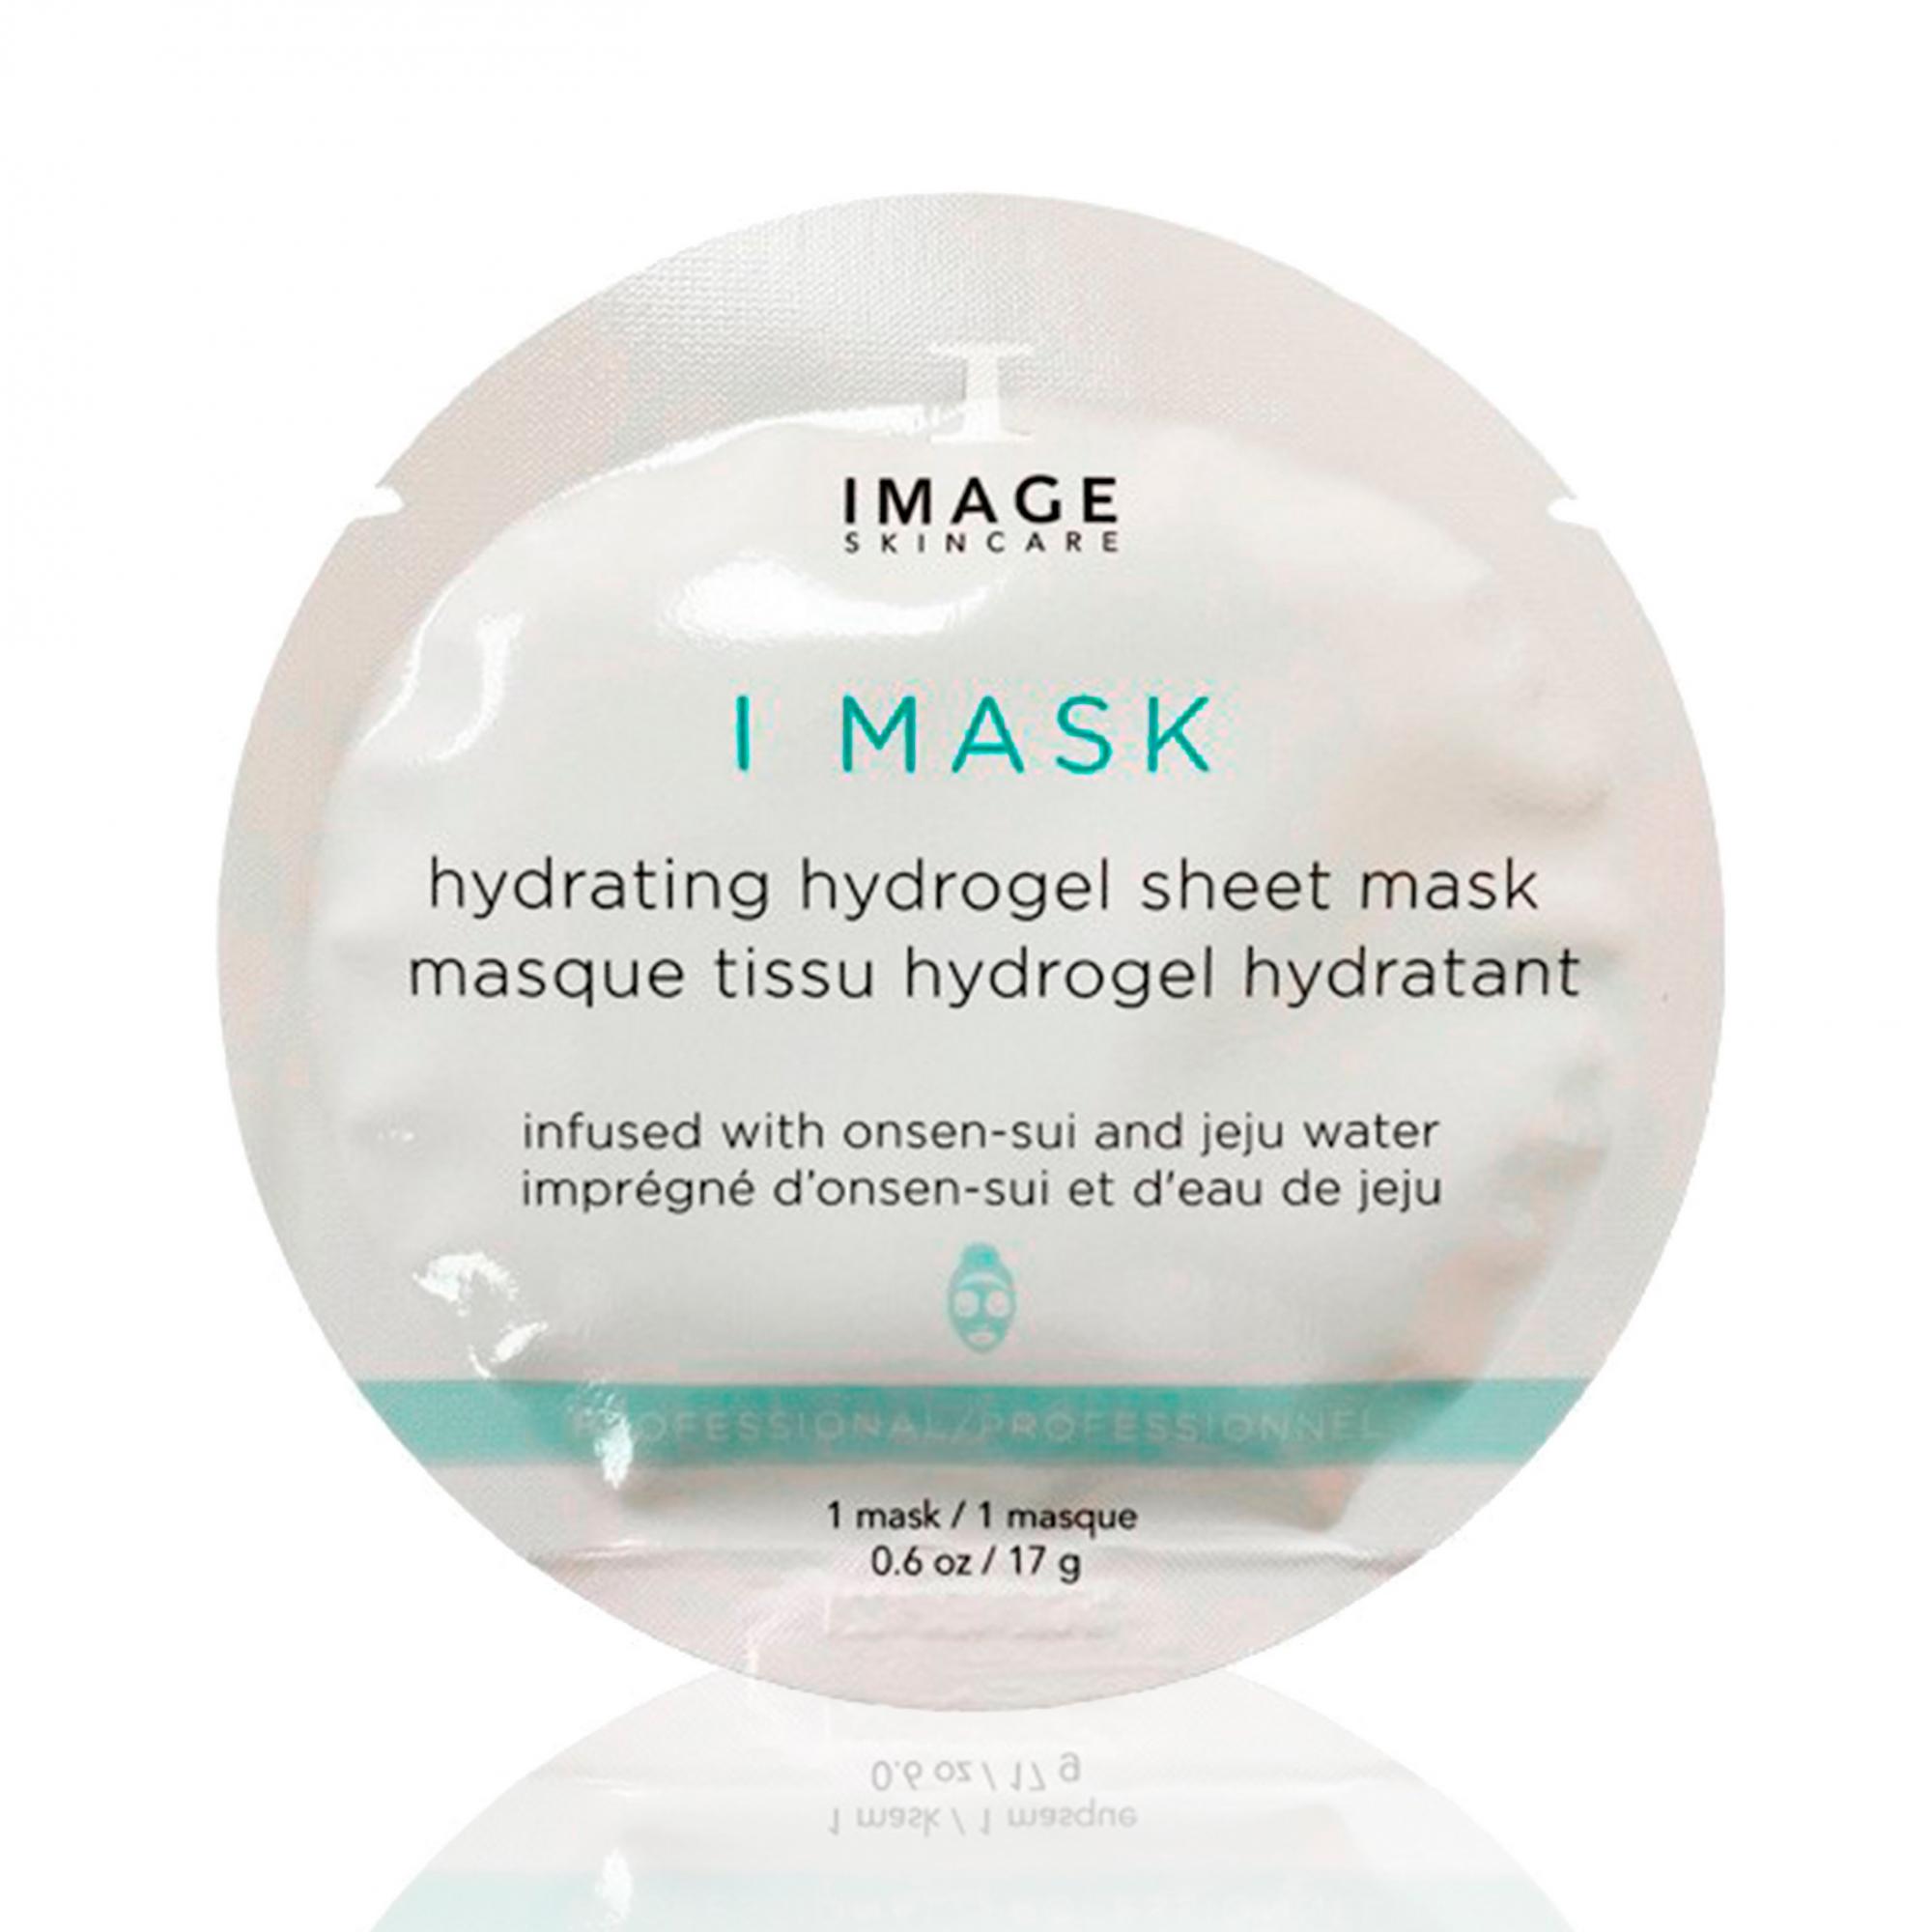 L l маска для лица. I Mask Hydrating Hydrogel Sheet Mask. Image Skincare гидрогелевая маска. Image Skincare i Mask Anti-Aging Hydrogel. Image Mask Biomolecular Hydrating маска гидрогелевая.